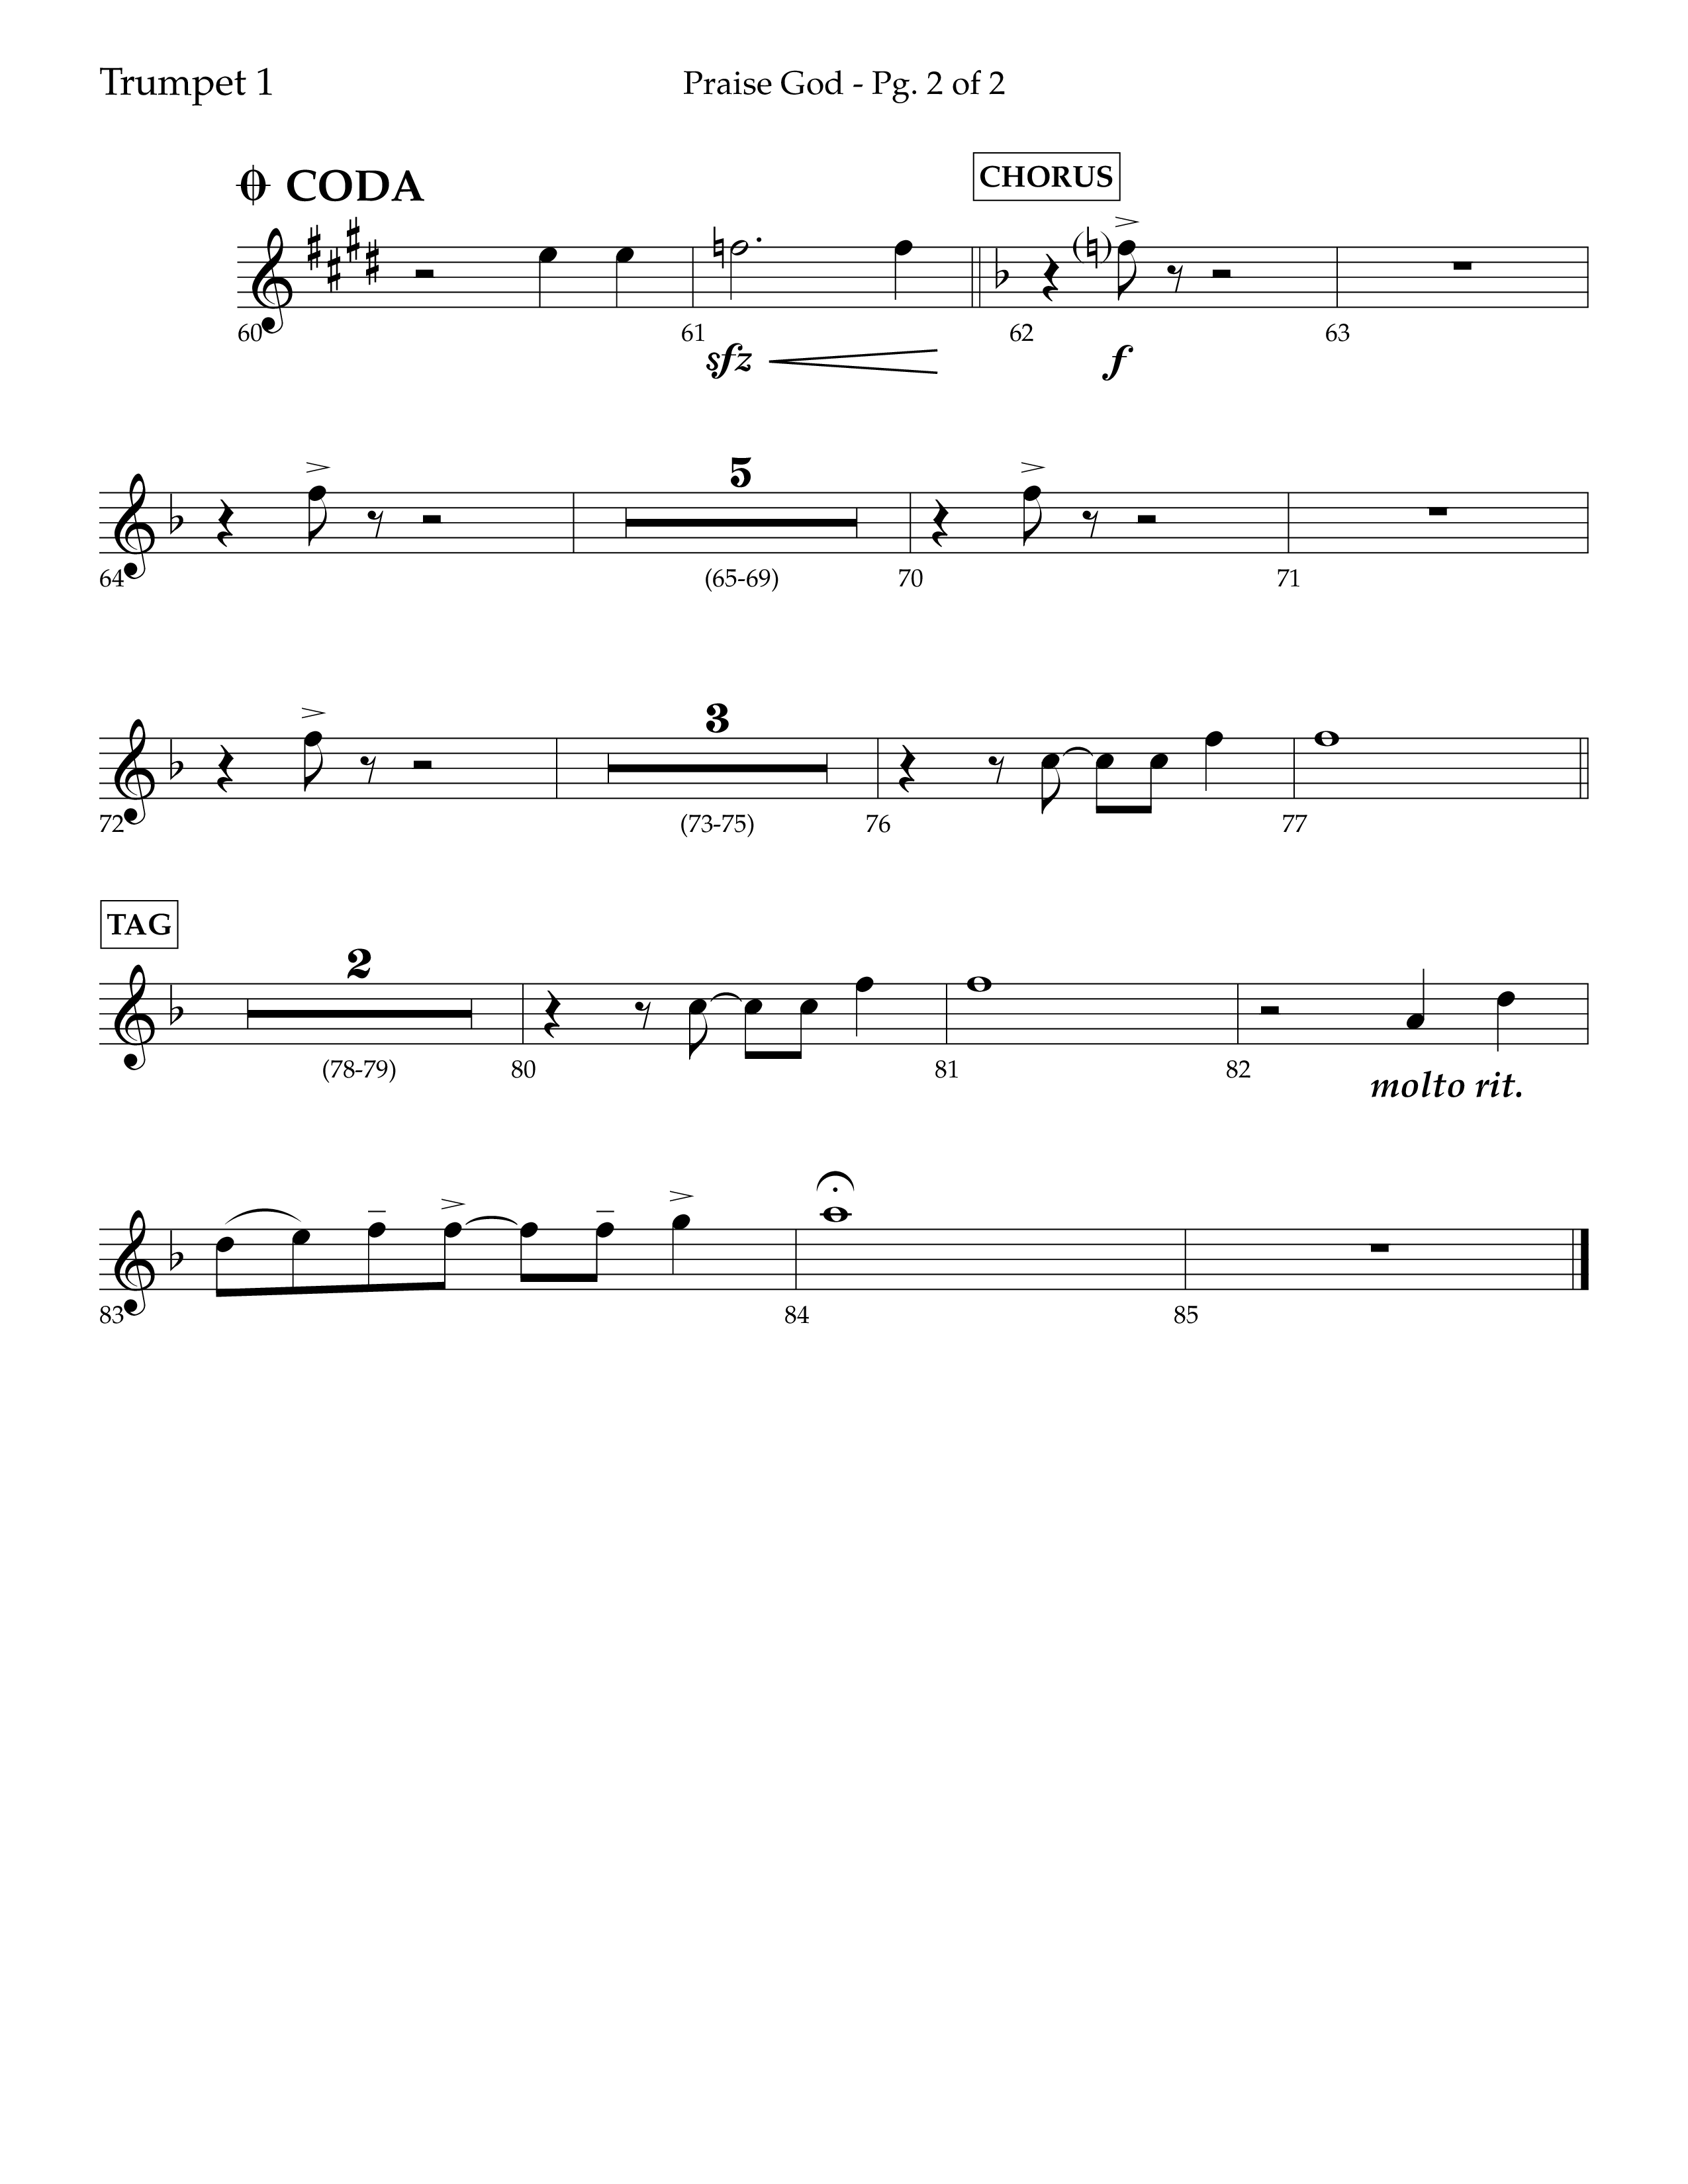 Praise God (Choral Anthem SATB) Trumpet 1 (Lifeway Choral / Arr. Dennis Allen)